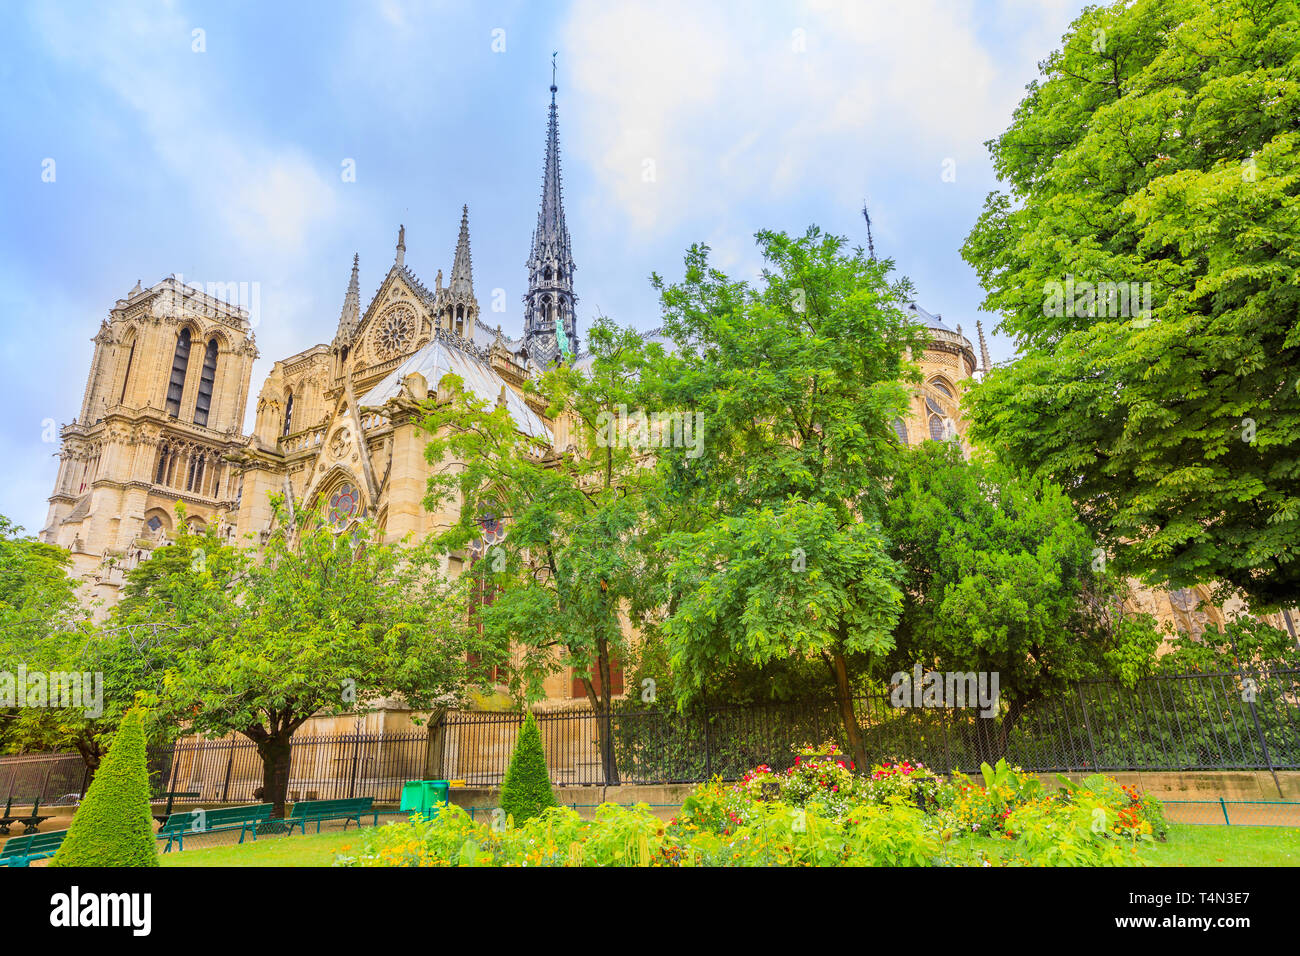 Typische Garten von Notre Dame de Paris, beliebte Sehenswürdigkeit und Kathedrale der Hauptstadt von Frankreich. Gotische französischer Architektur Unserer Lieben Frau von Paris. Stockfoto